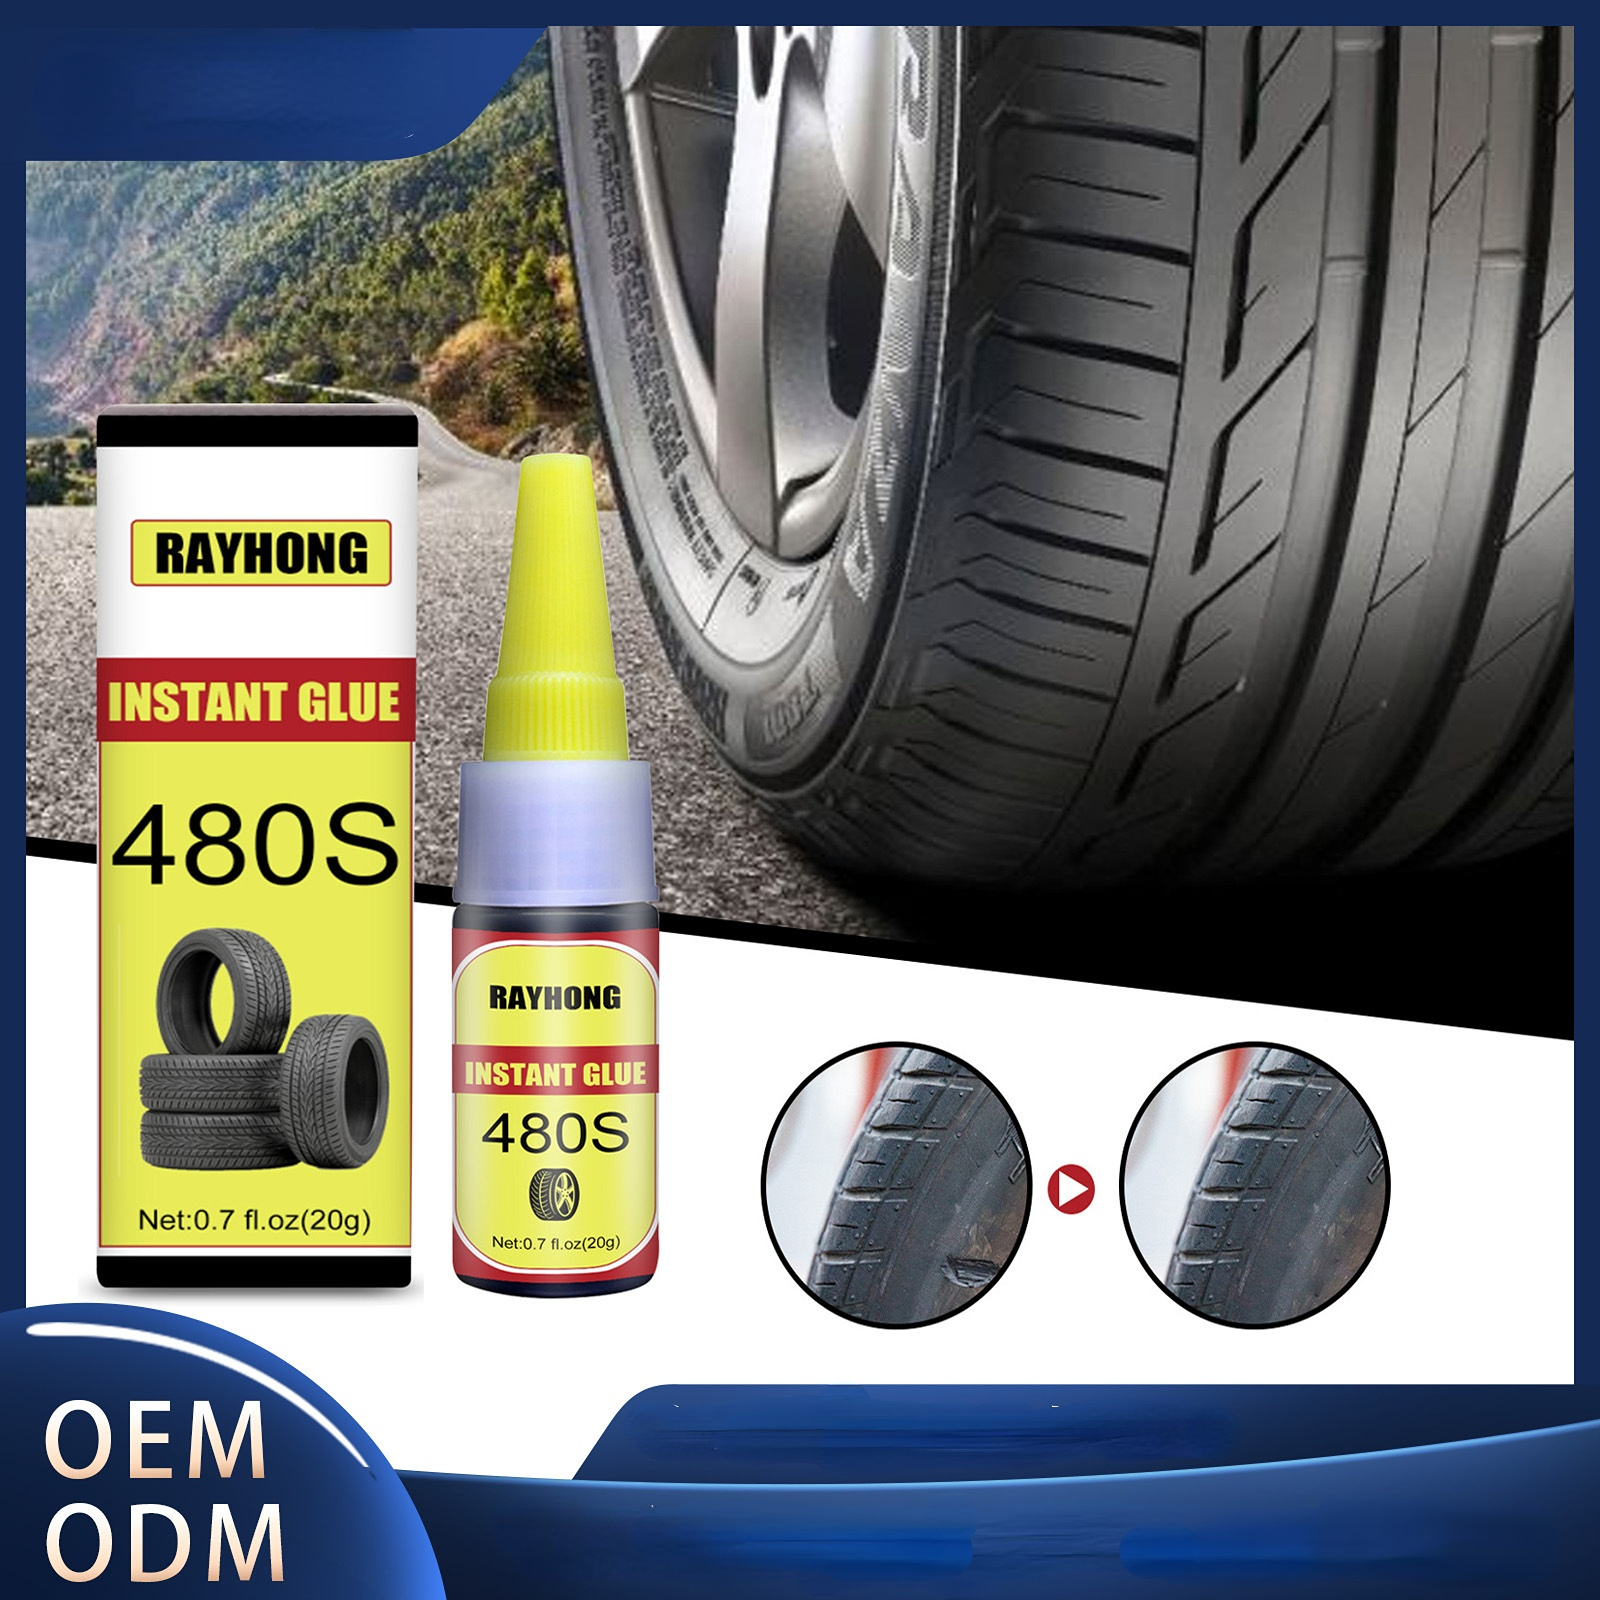  Rayhong - Parche de pegamento para reparación de neumáticos de  bicicleta, para el hogar, goma y cuero, grietas, fuerte y eficaz, sellado  rápido, reparación de neumáticos, pegamento adhesivo transparente universal  